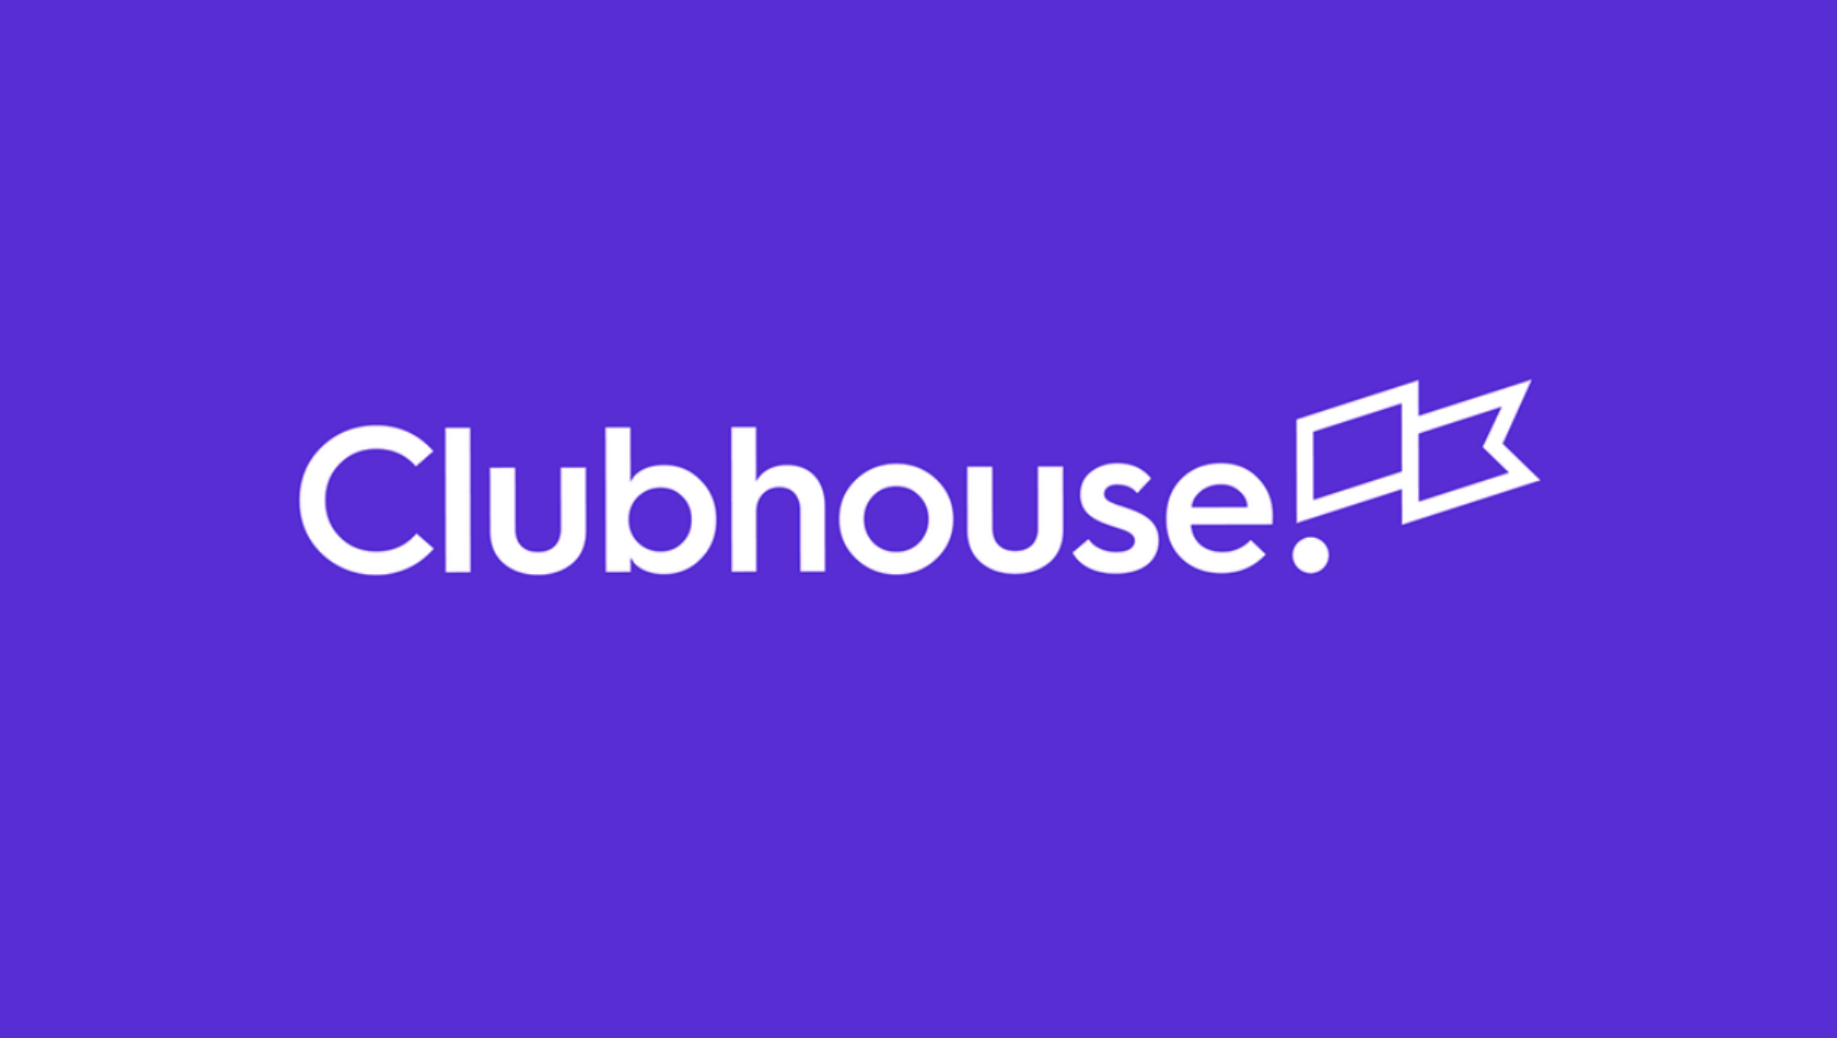 Obvio Facebook no se queda atrás y ya crea su propio Clubhouse